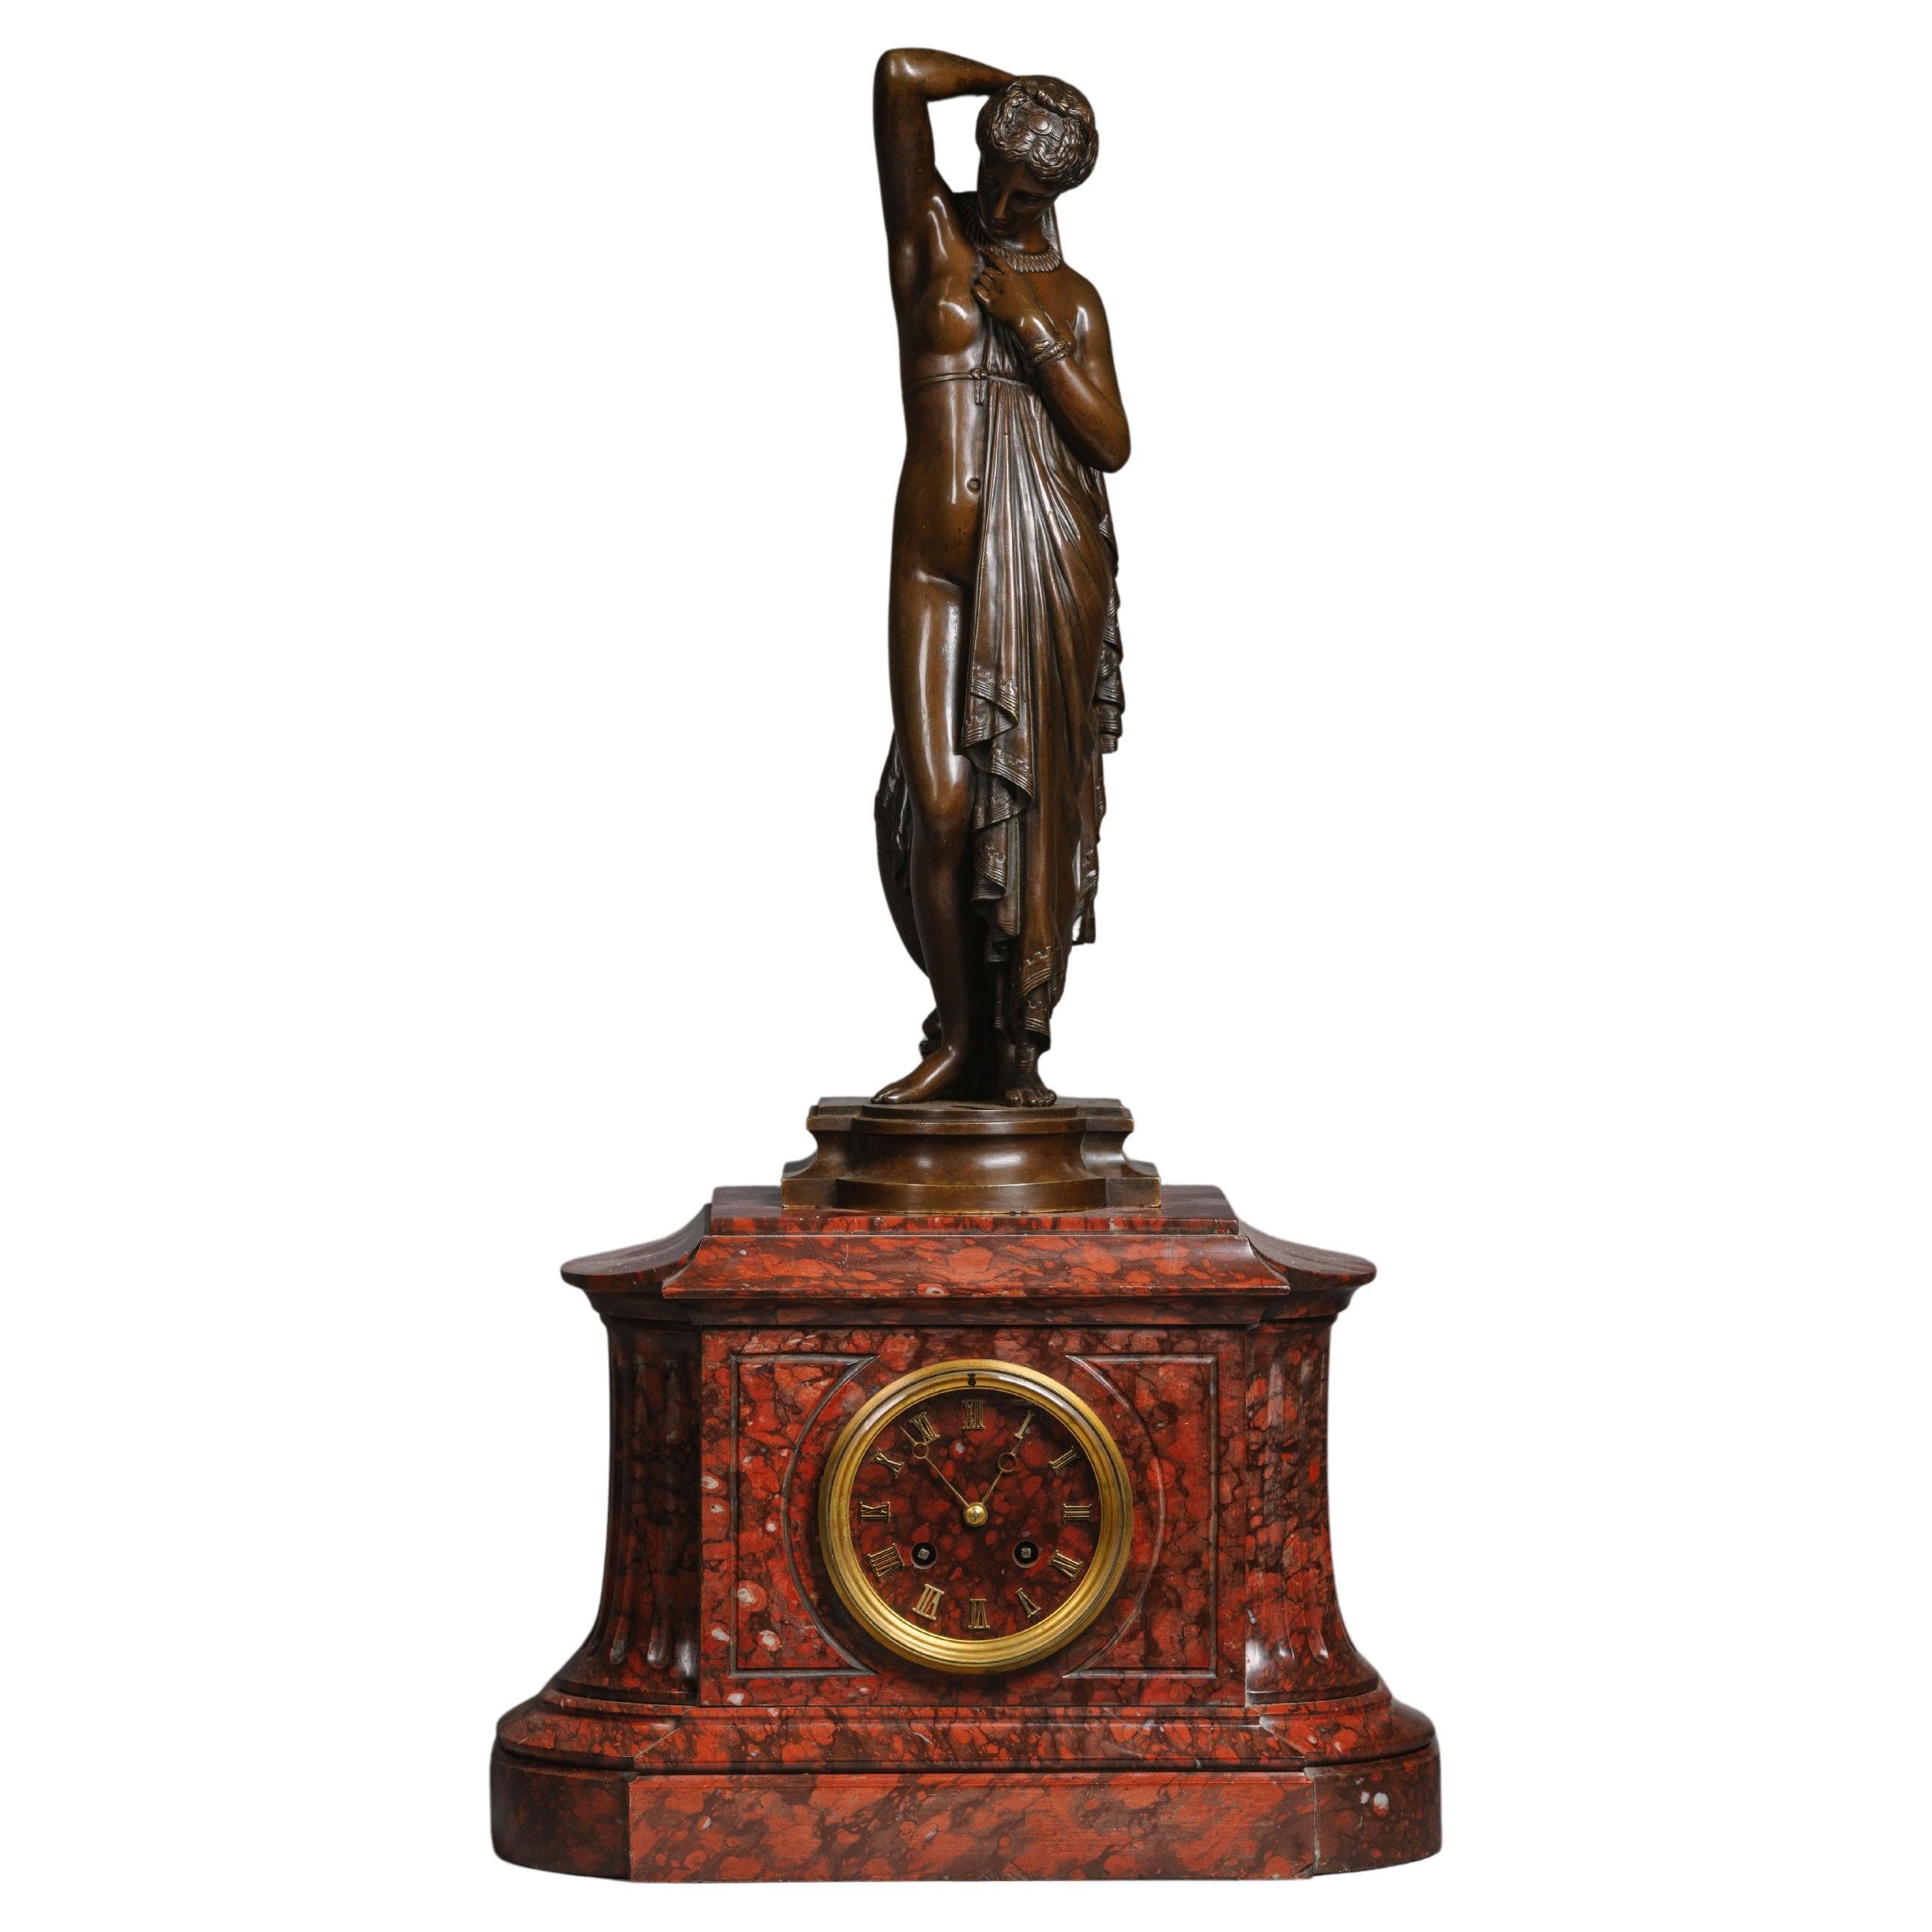 A Napoléon III Marble Mantle Clock